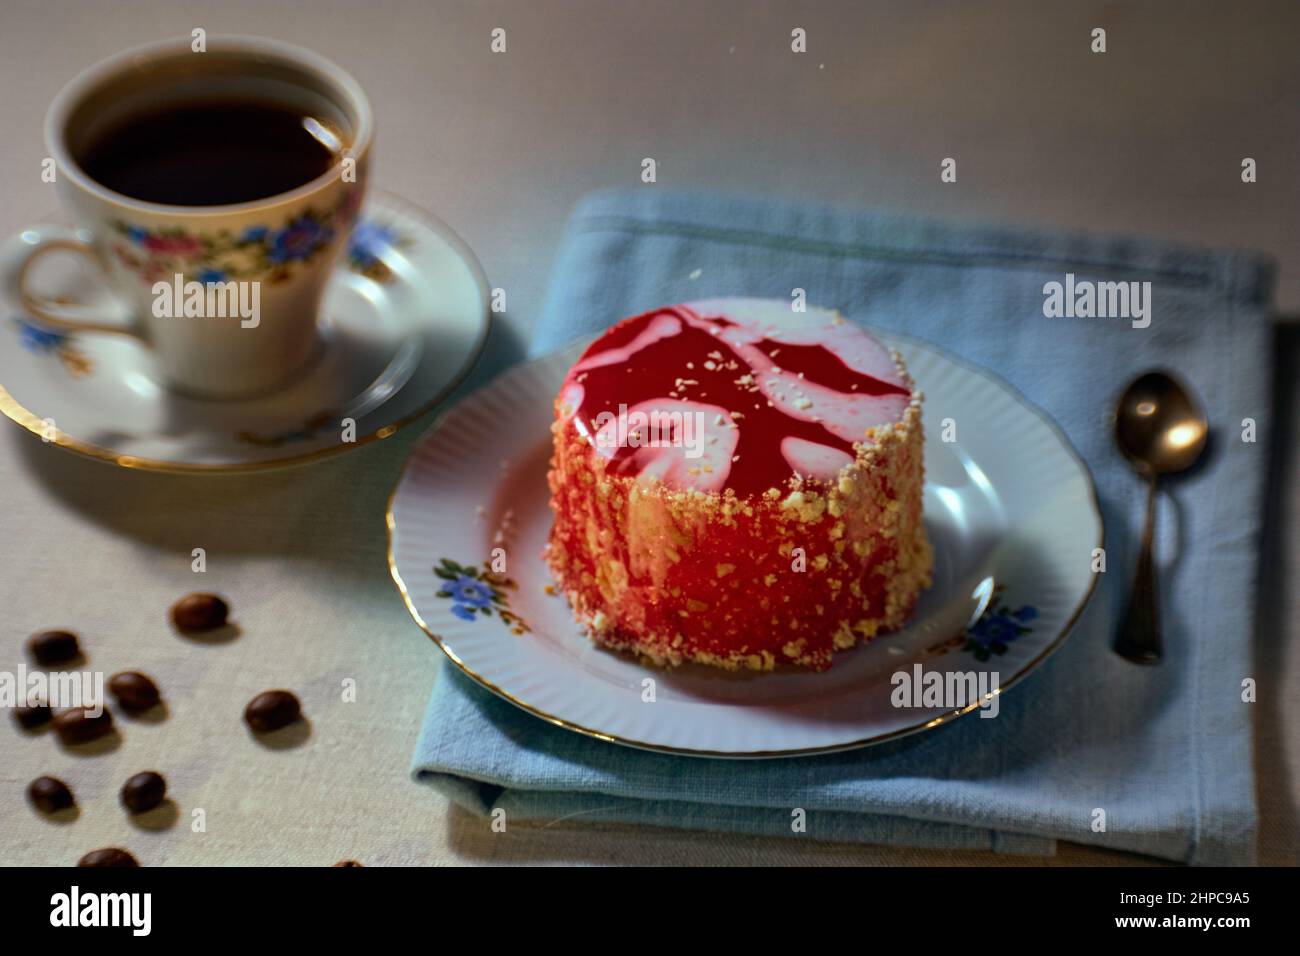 Frühstückskonzept mit Louise-Kuchen auf Keramikplatte, Kaffee in einer Fayence-Tasse auf dem Hintergrund, verstreute Kaffeebohnen auf einem Tisch Stockfoto